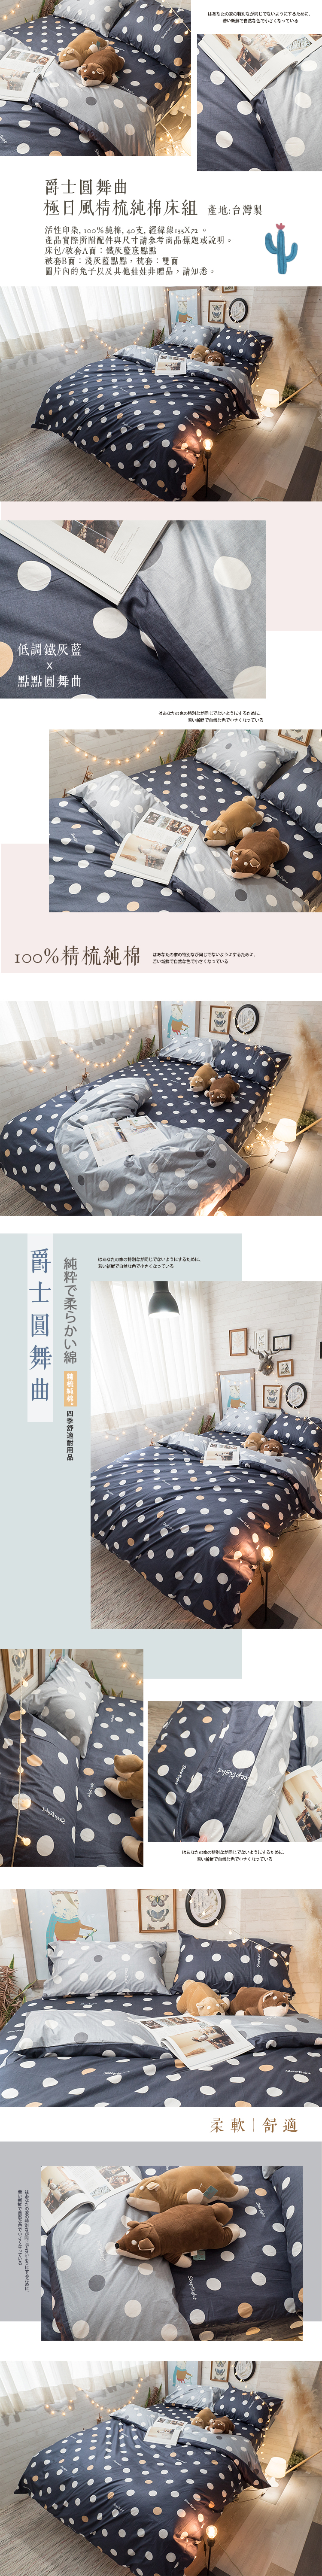 爵士圓舞曲ㄙ Q3 雙人加大床包與雙人新式兩用被五件組100%精梳棉台灣製